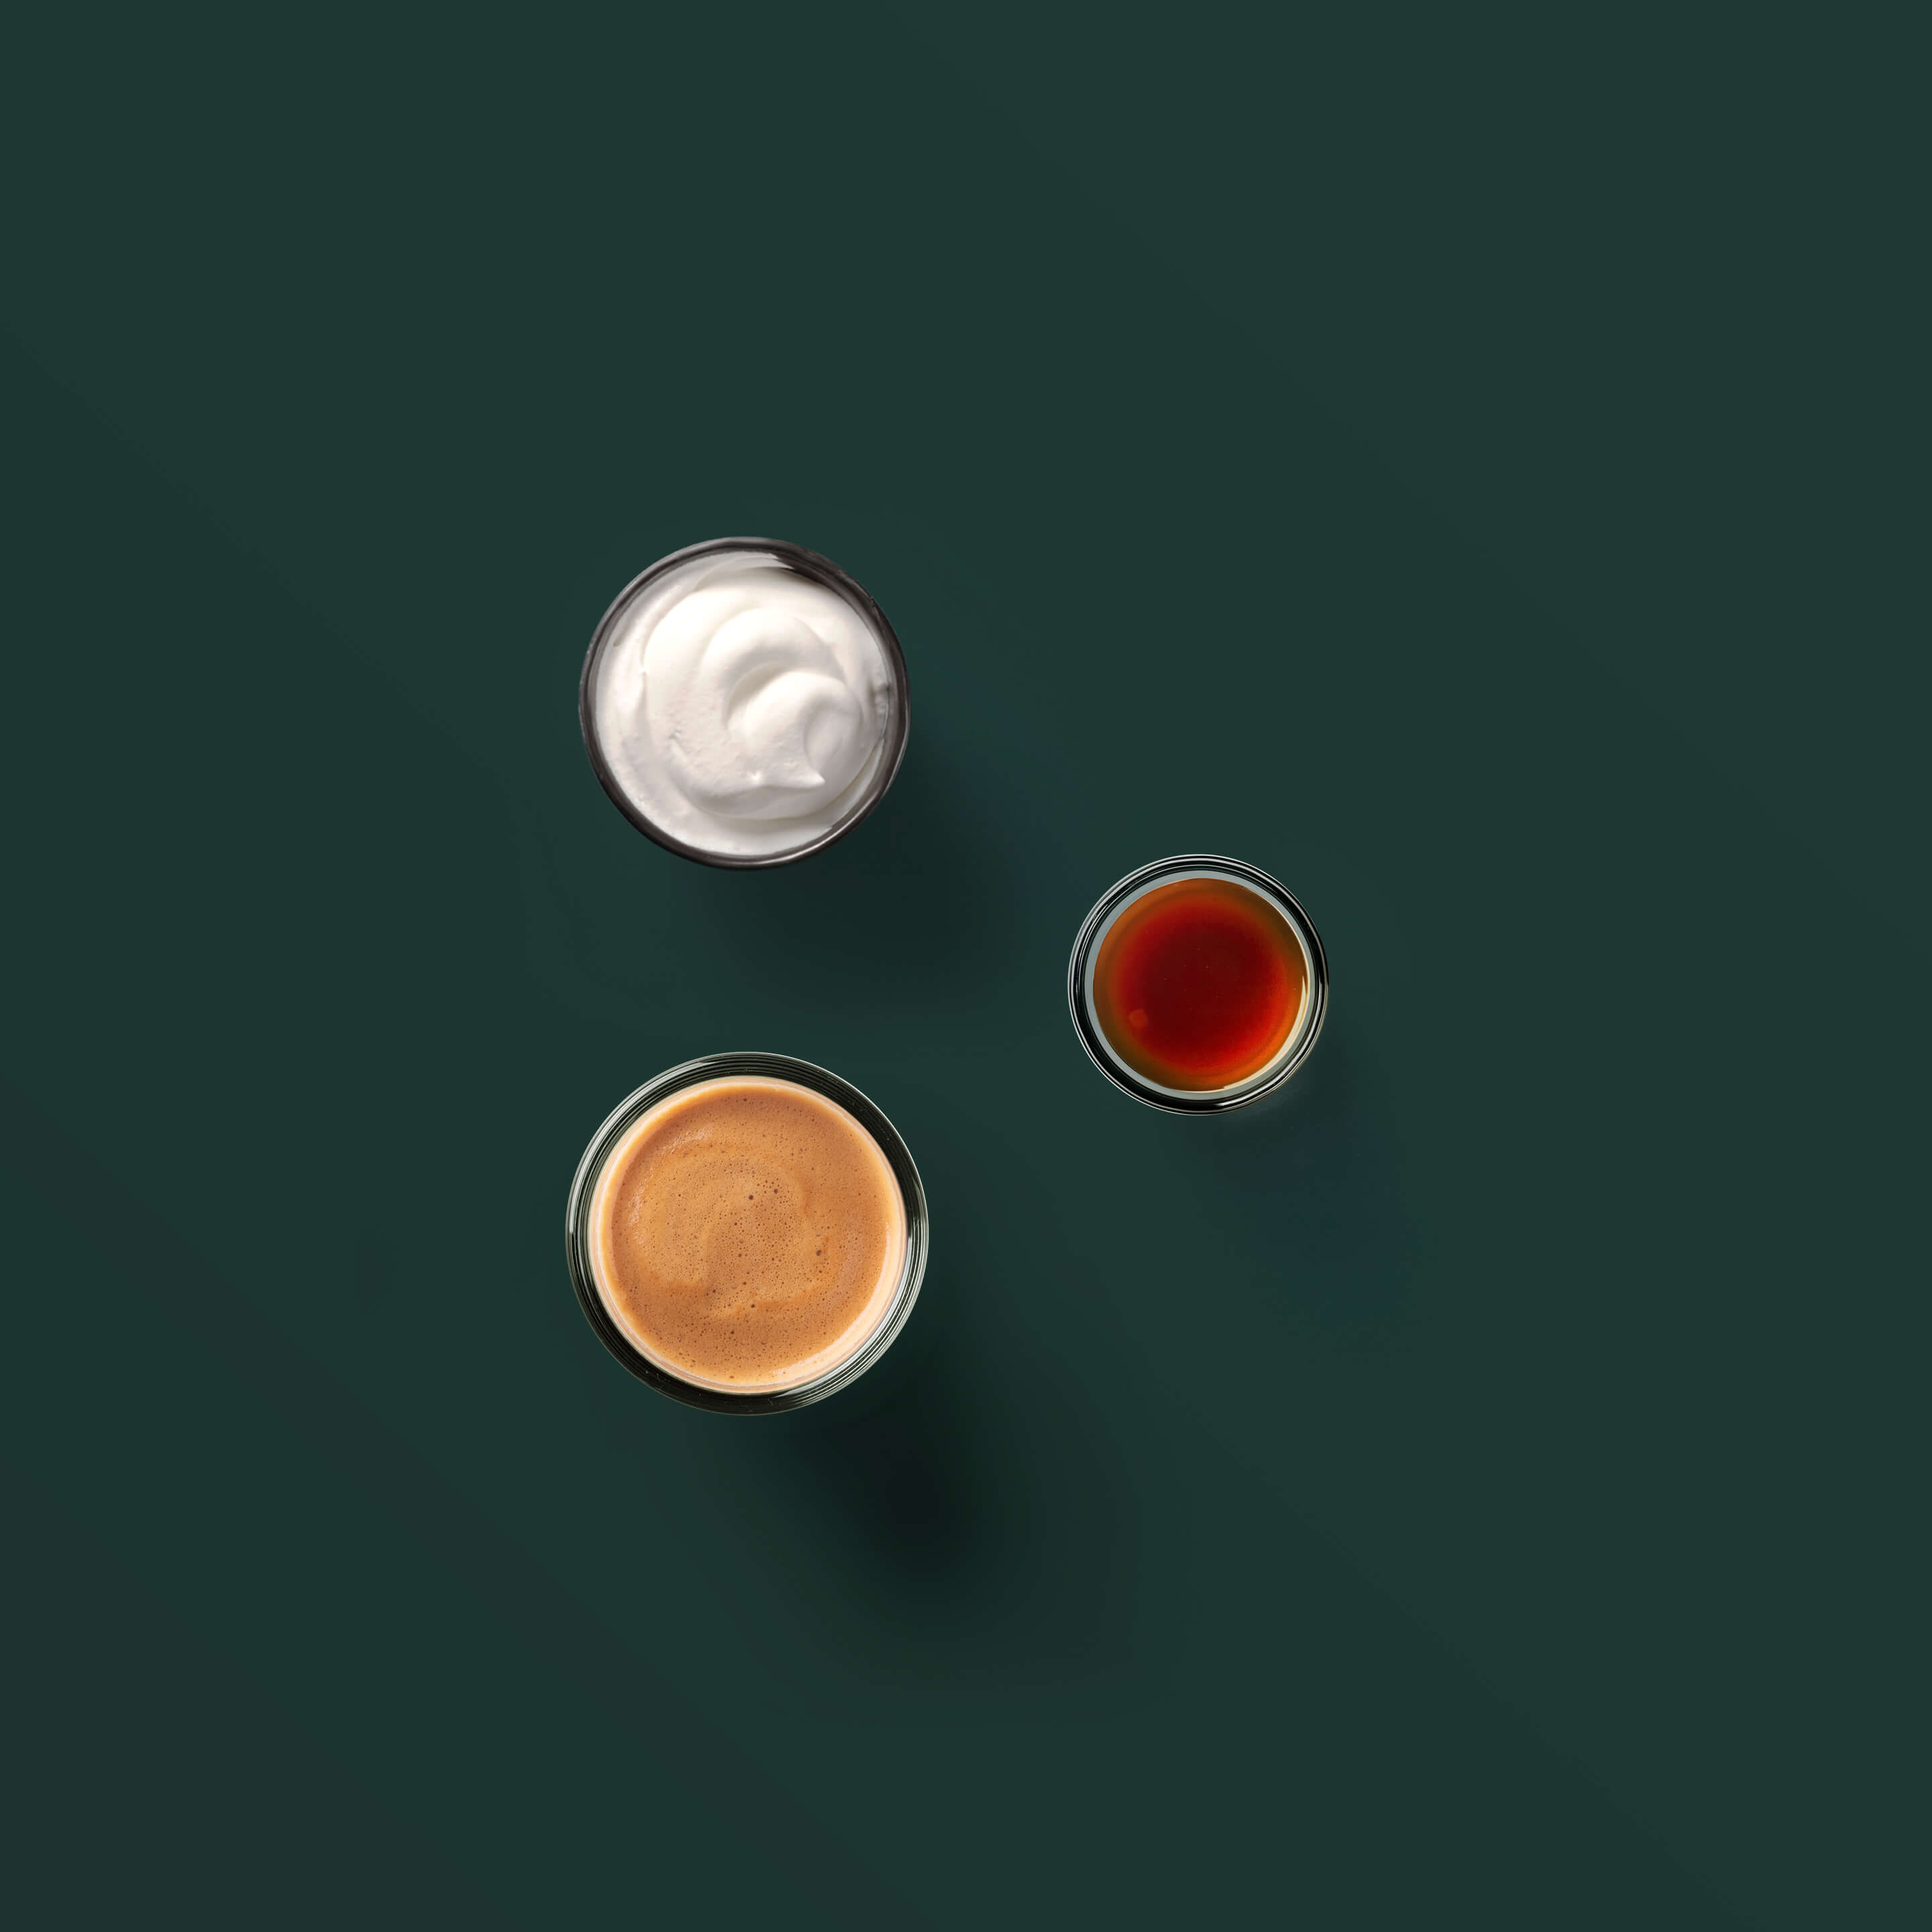 Lista składników: espresso, bita śmietana, karmel